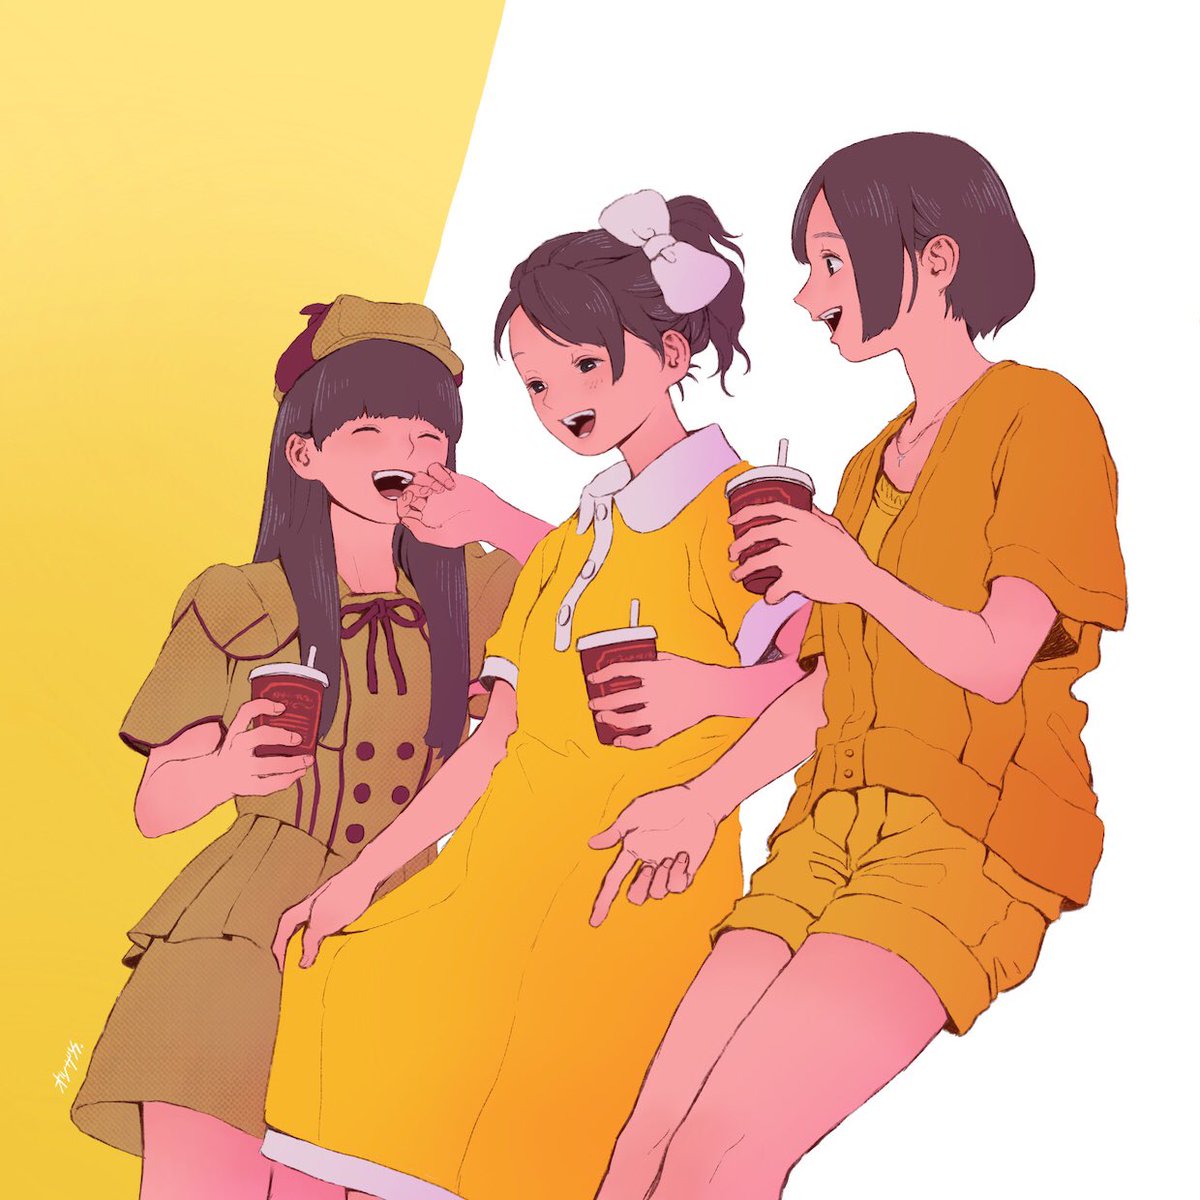 multiple girls 3girls yellow dress dress short hair shorts long hair  illustration images